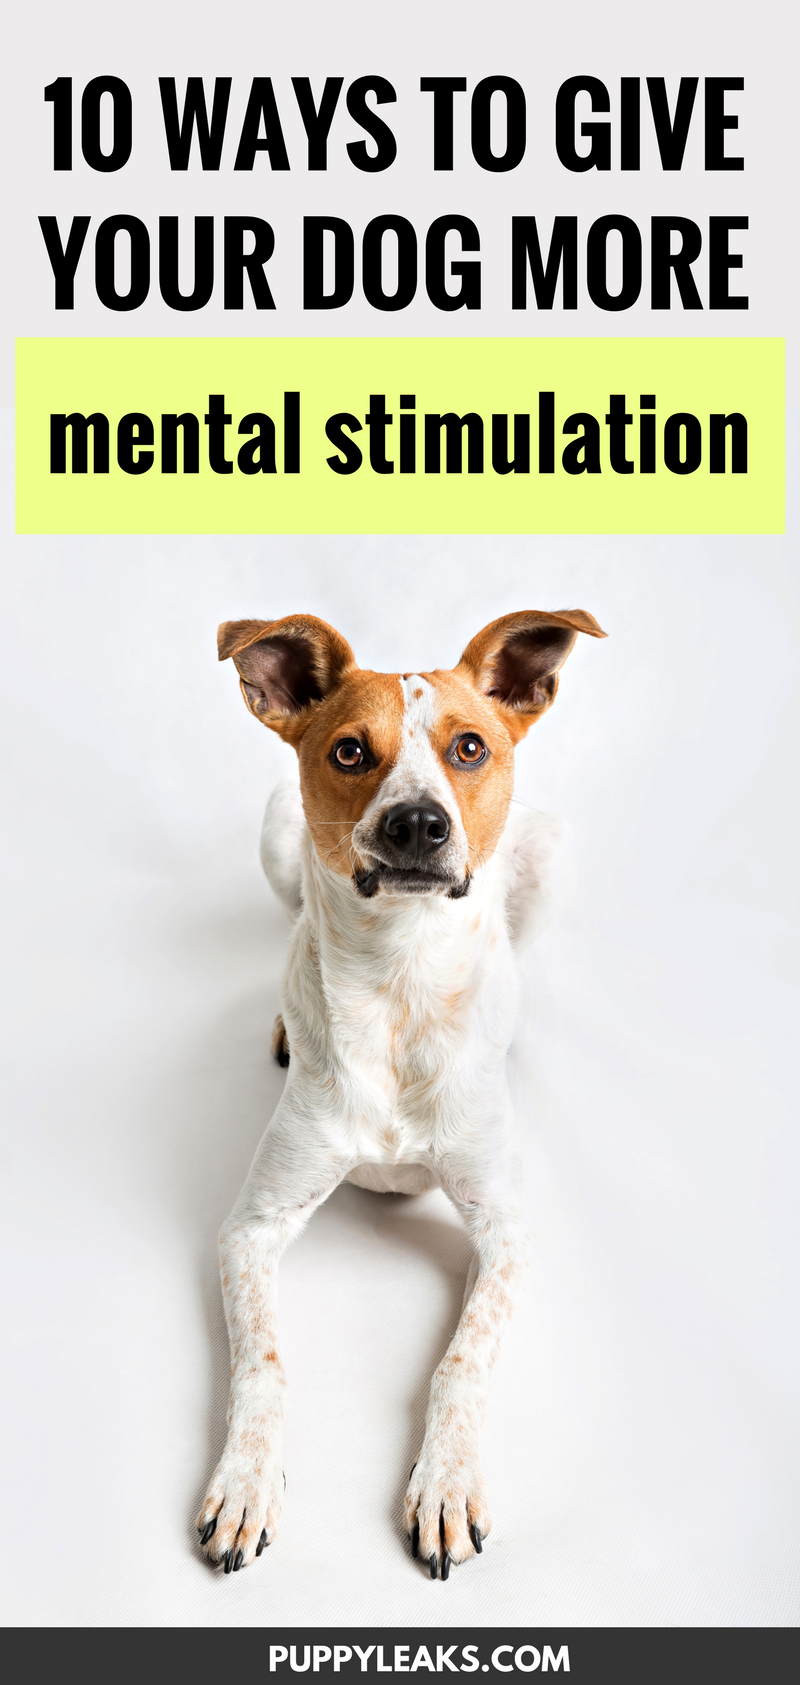 10 způsobů, jak dát svému psovi více mentální stimulace